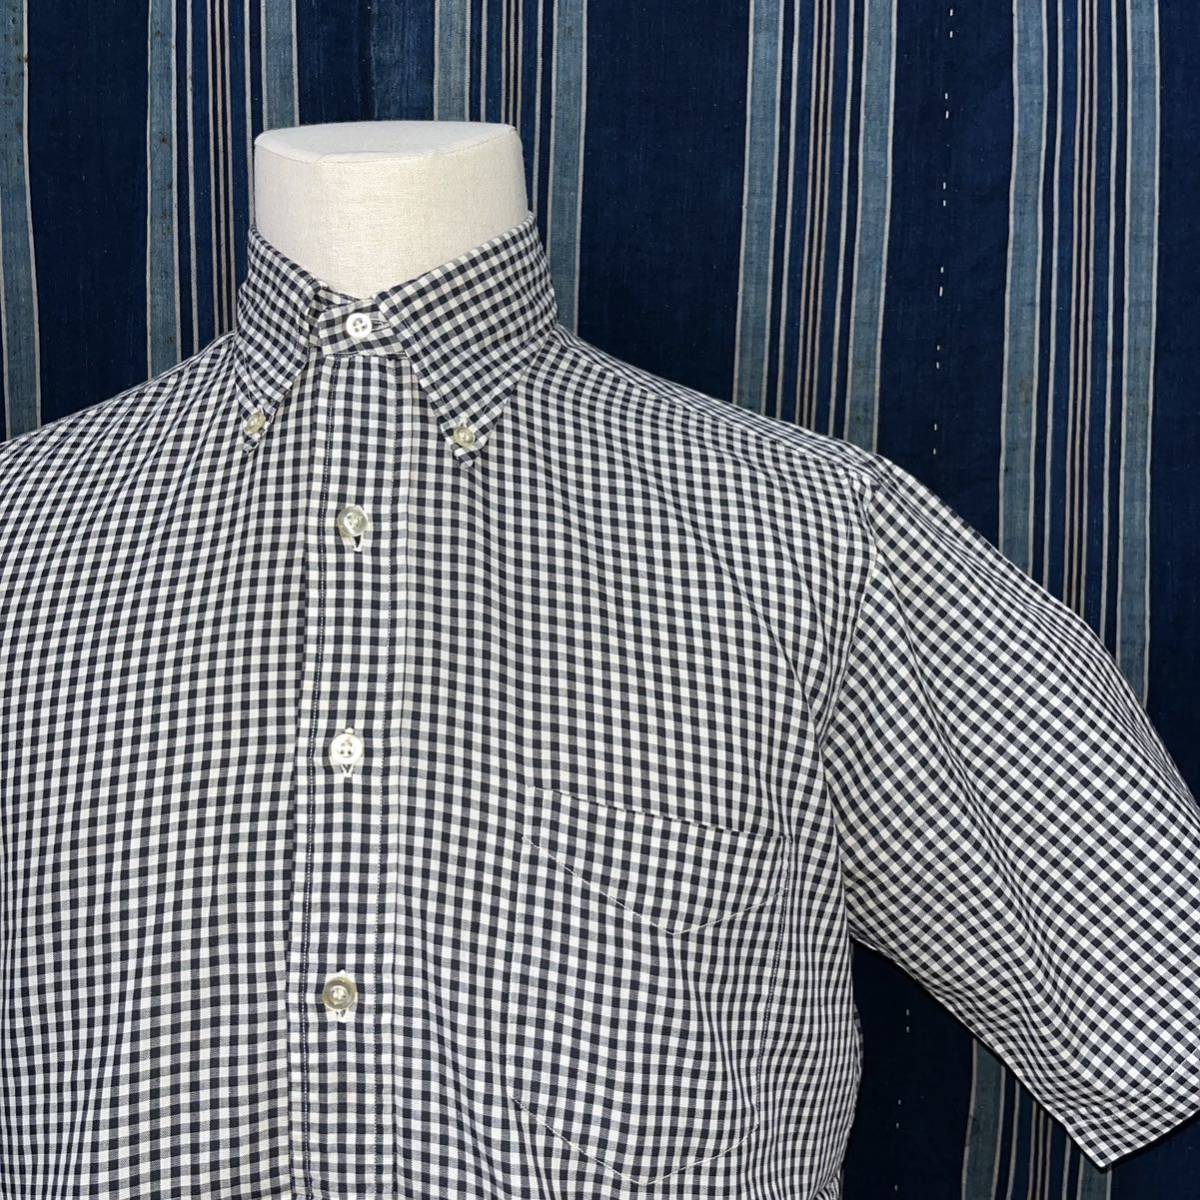 マチ付き 50s 60s eagle shirt makers half sleeve b.d. shirt 50年代 60年代 アメリカ製 ギンガムチェック シャツ ボタンダウン